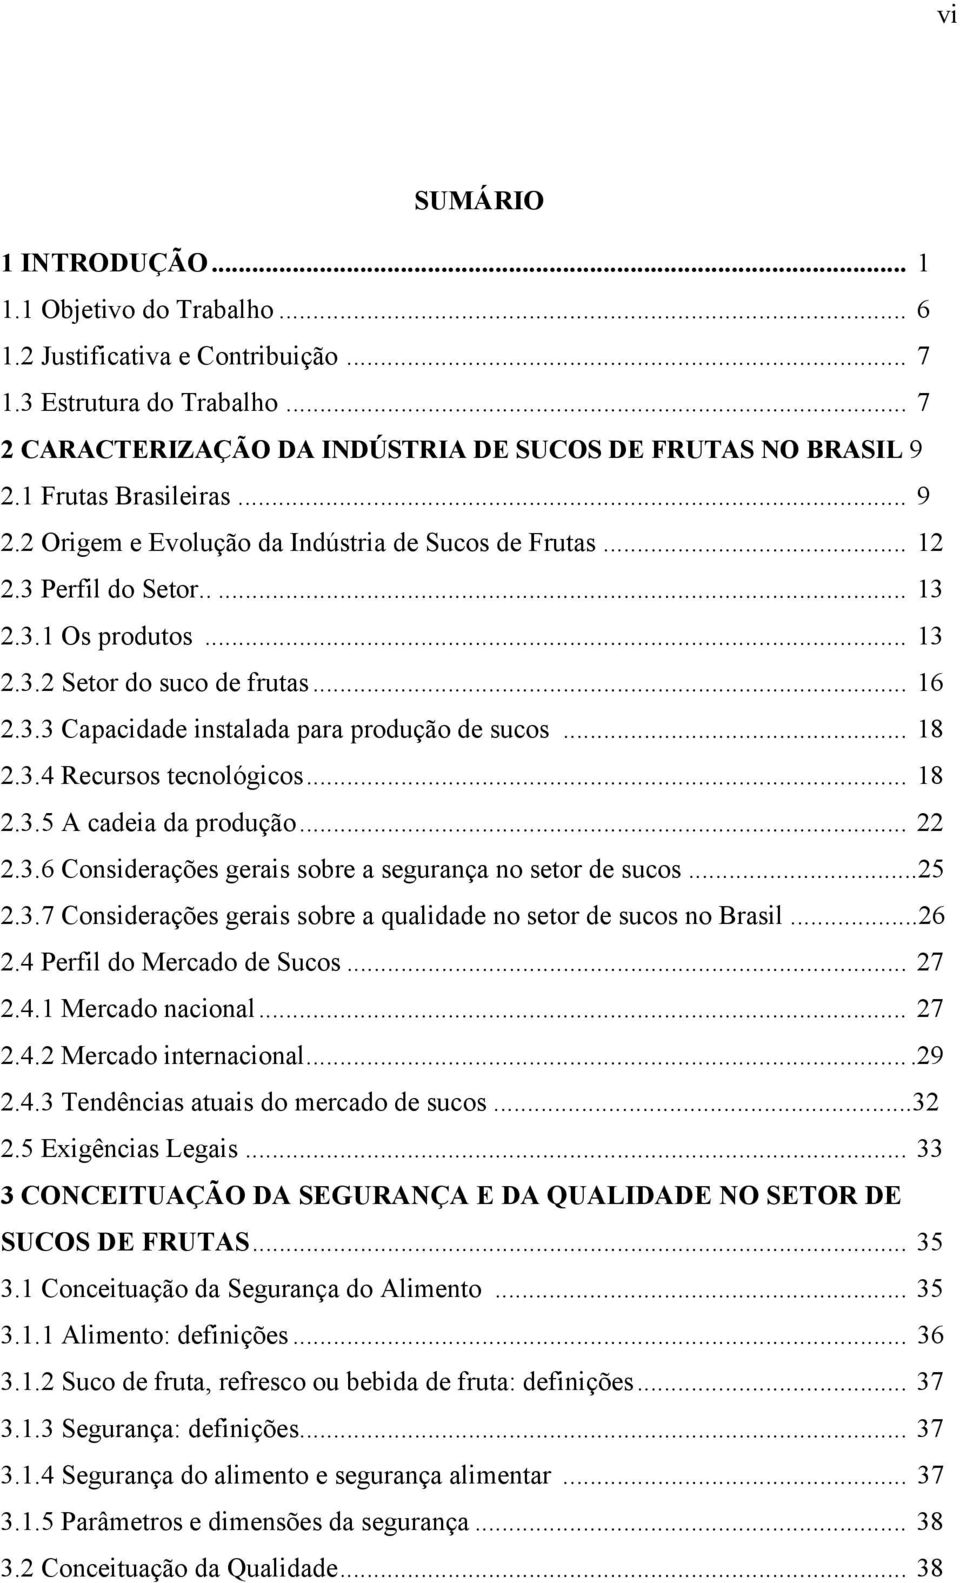 .. 18 2.3.4 Recursos tecnológicos... 18 2.3.5 A cadeia da produção... 22 2.3.6 Considerações gerais sobre a segurança no setor de sucos...25 2.3.7 Considerações gerais sobre a qualidade no setor de sucos no Brasil.